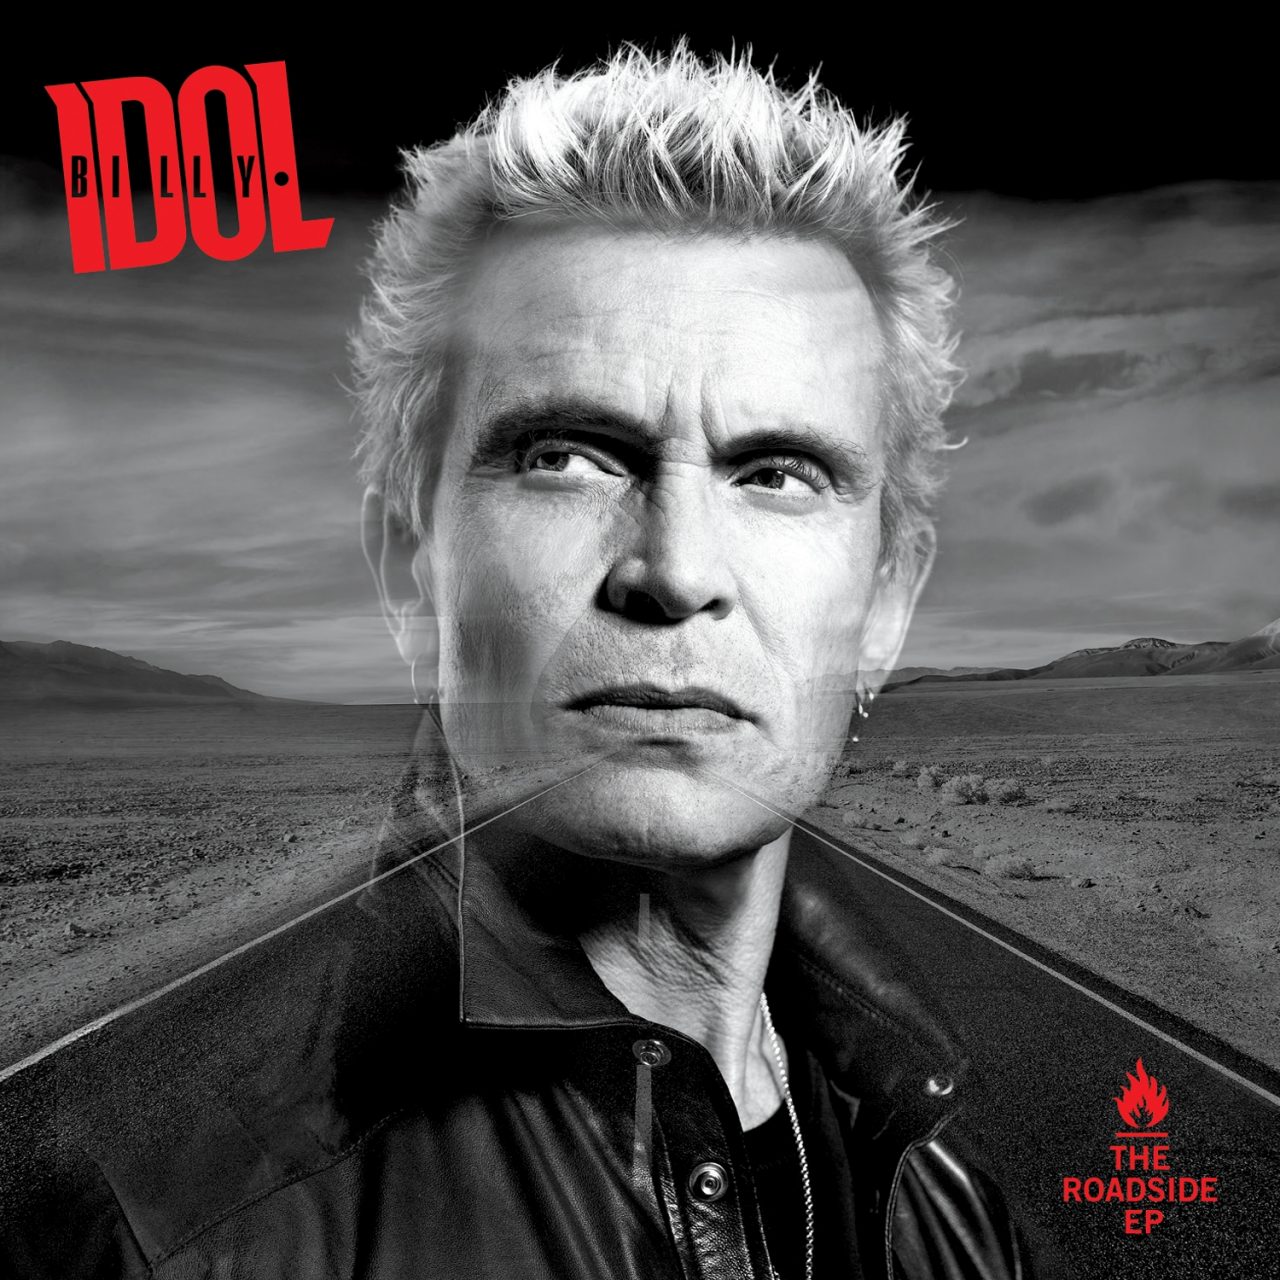 Das Albumcover "The Roadside" von Billy Idol zeigt den Musiker im Porträt in schwarz-weiß. Sein Kopf ist transparent. Hinter seinem Kopf ist eine Wüstenlandschaft ebenfalls in schwarz-weiß zu sehen.